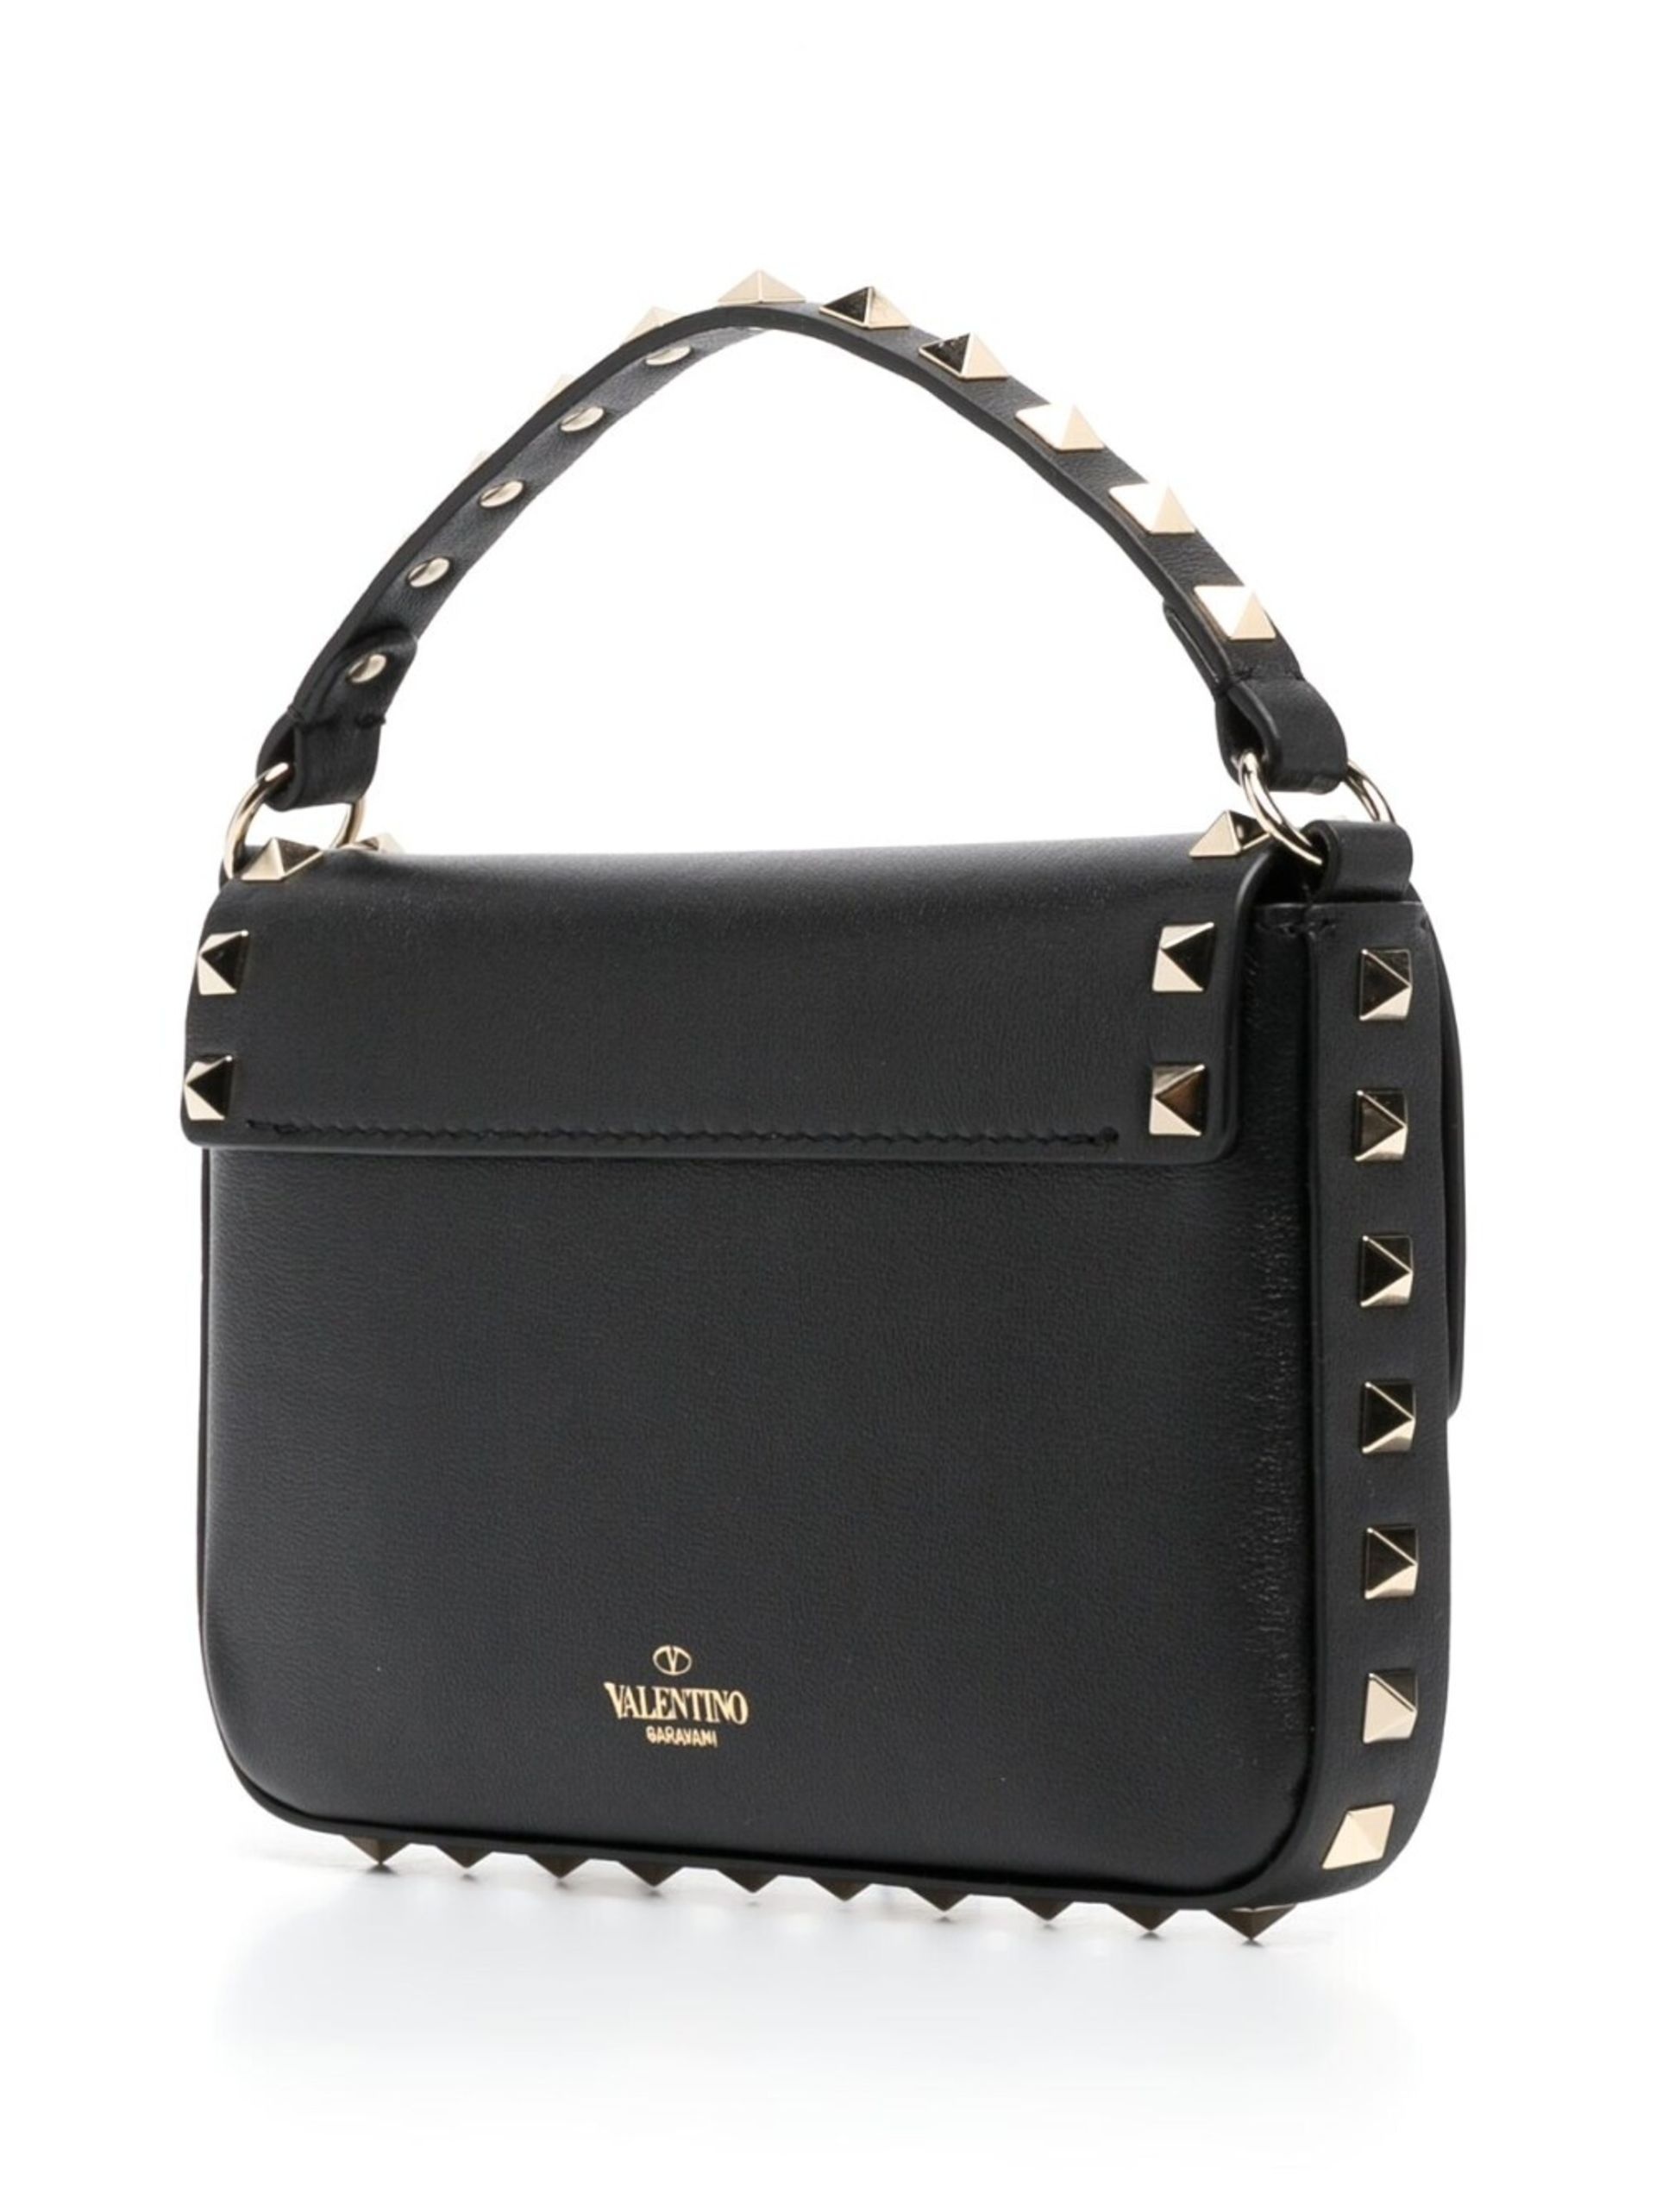 Valentino Garavani Rockstud-embellished leather shoulder bag - Neutrals